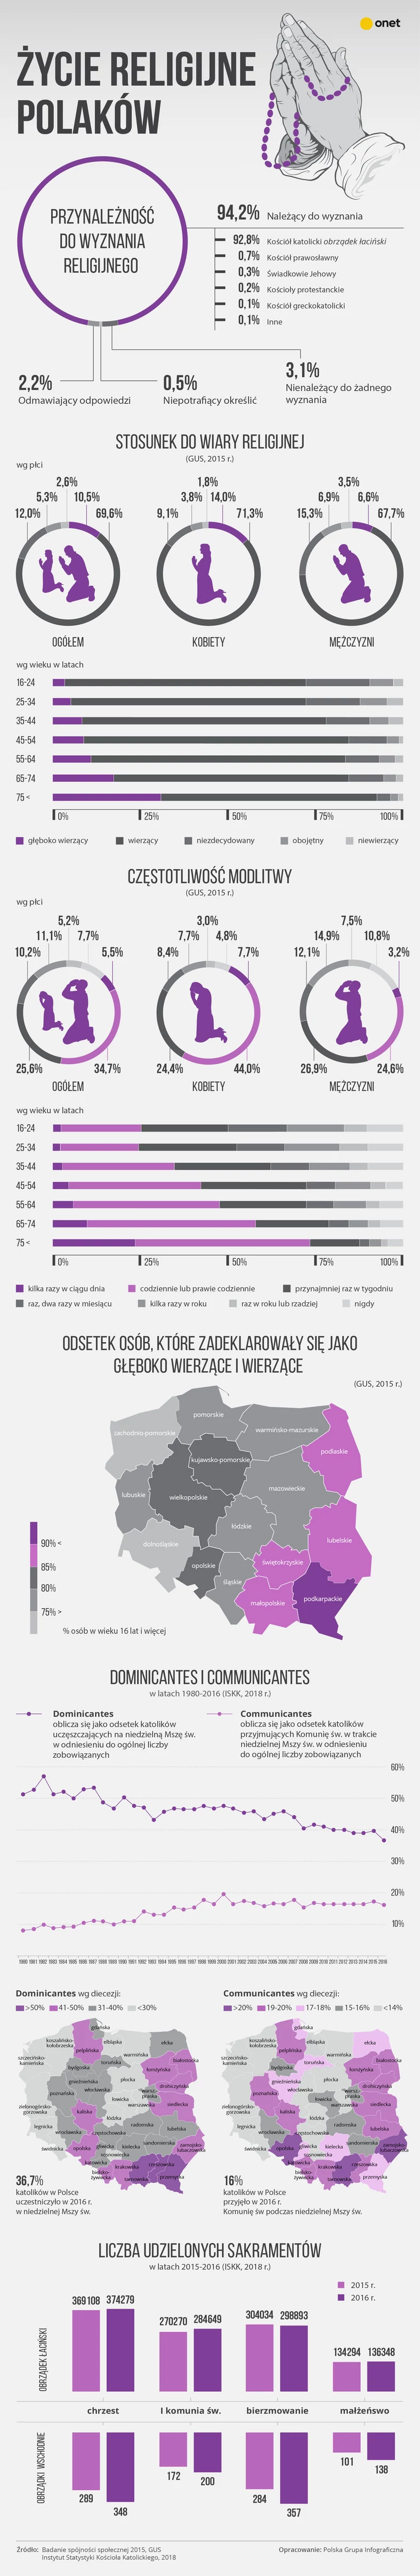 Życie religijne Polaków - infografika